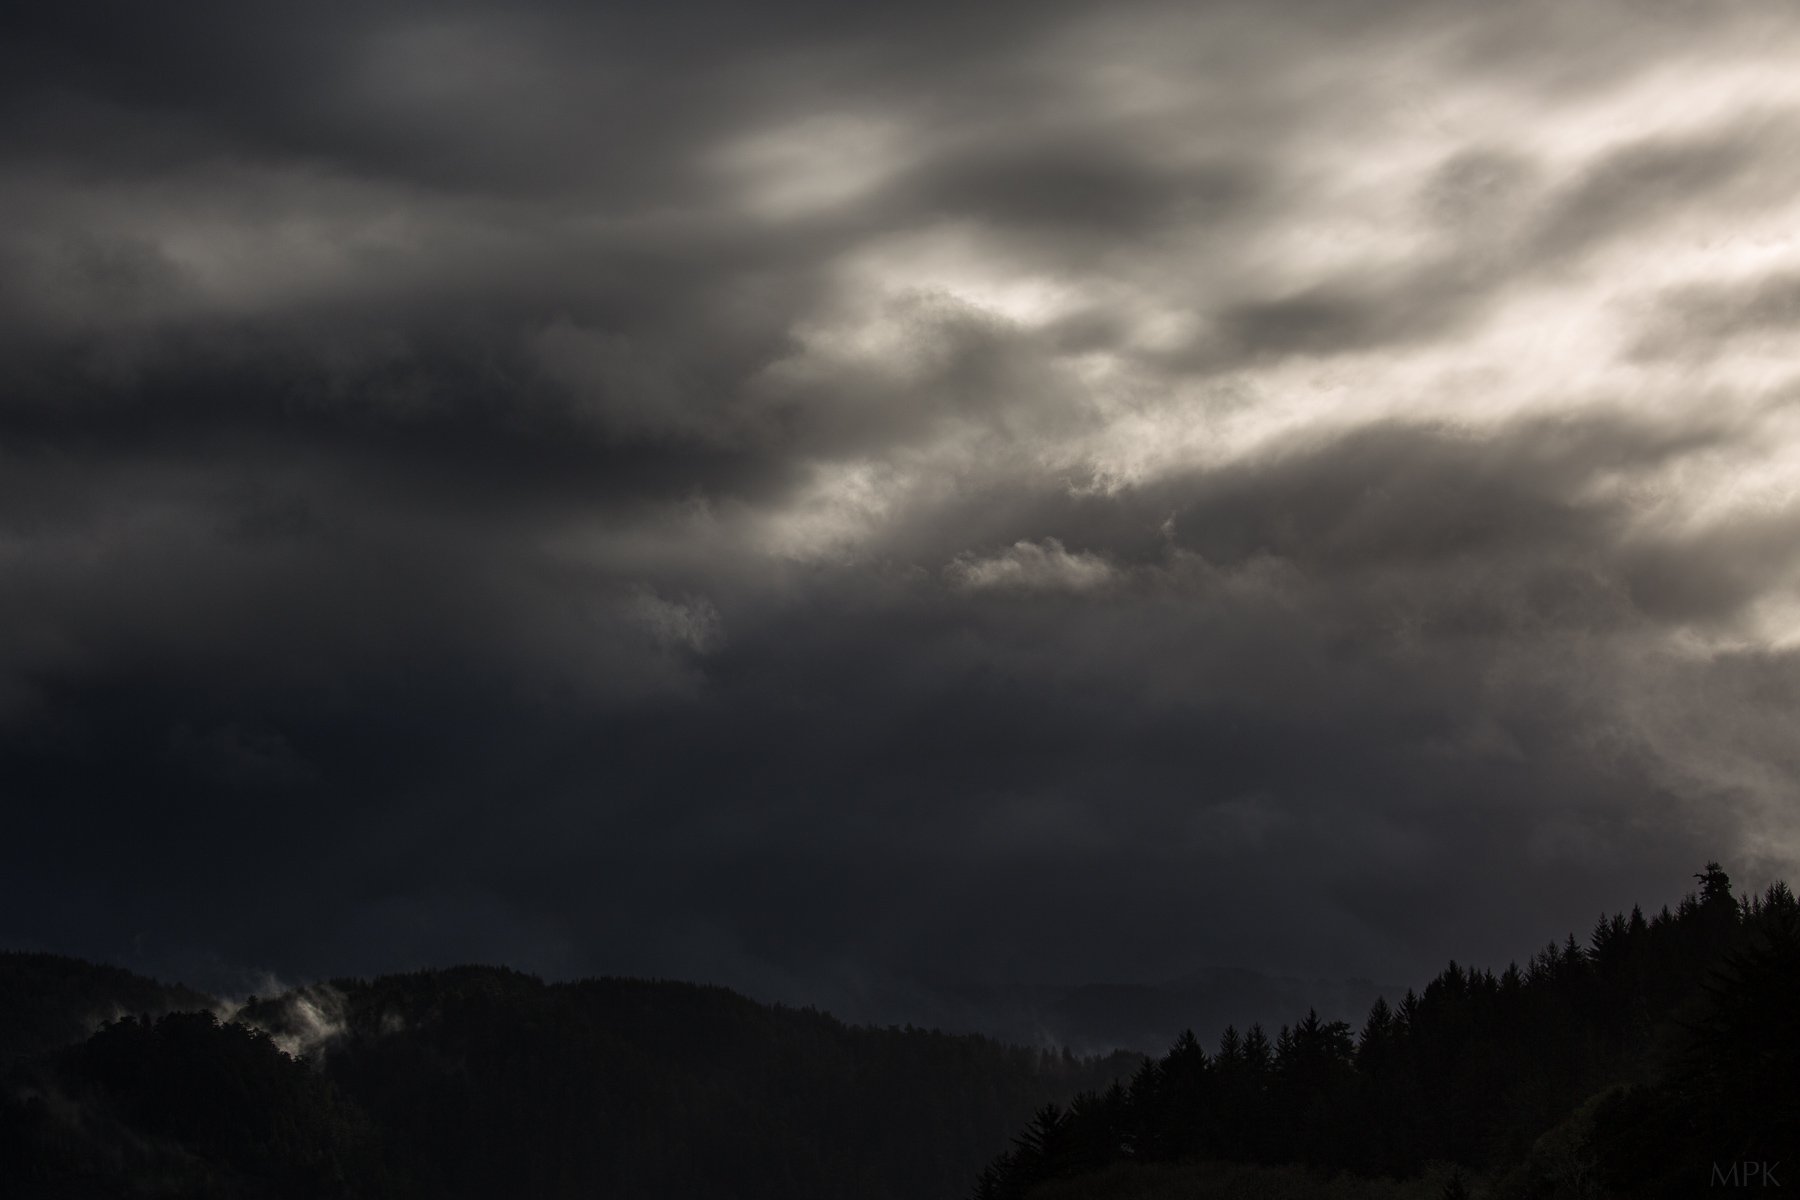 Forest-Dark-Cloudy-Light-Shadow-Matthew-Polvorosa-Kline.jpg